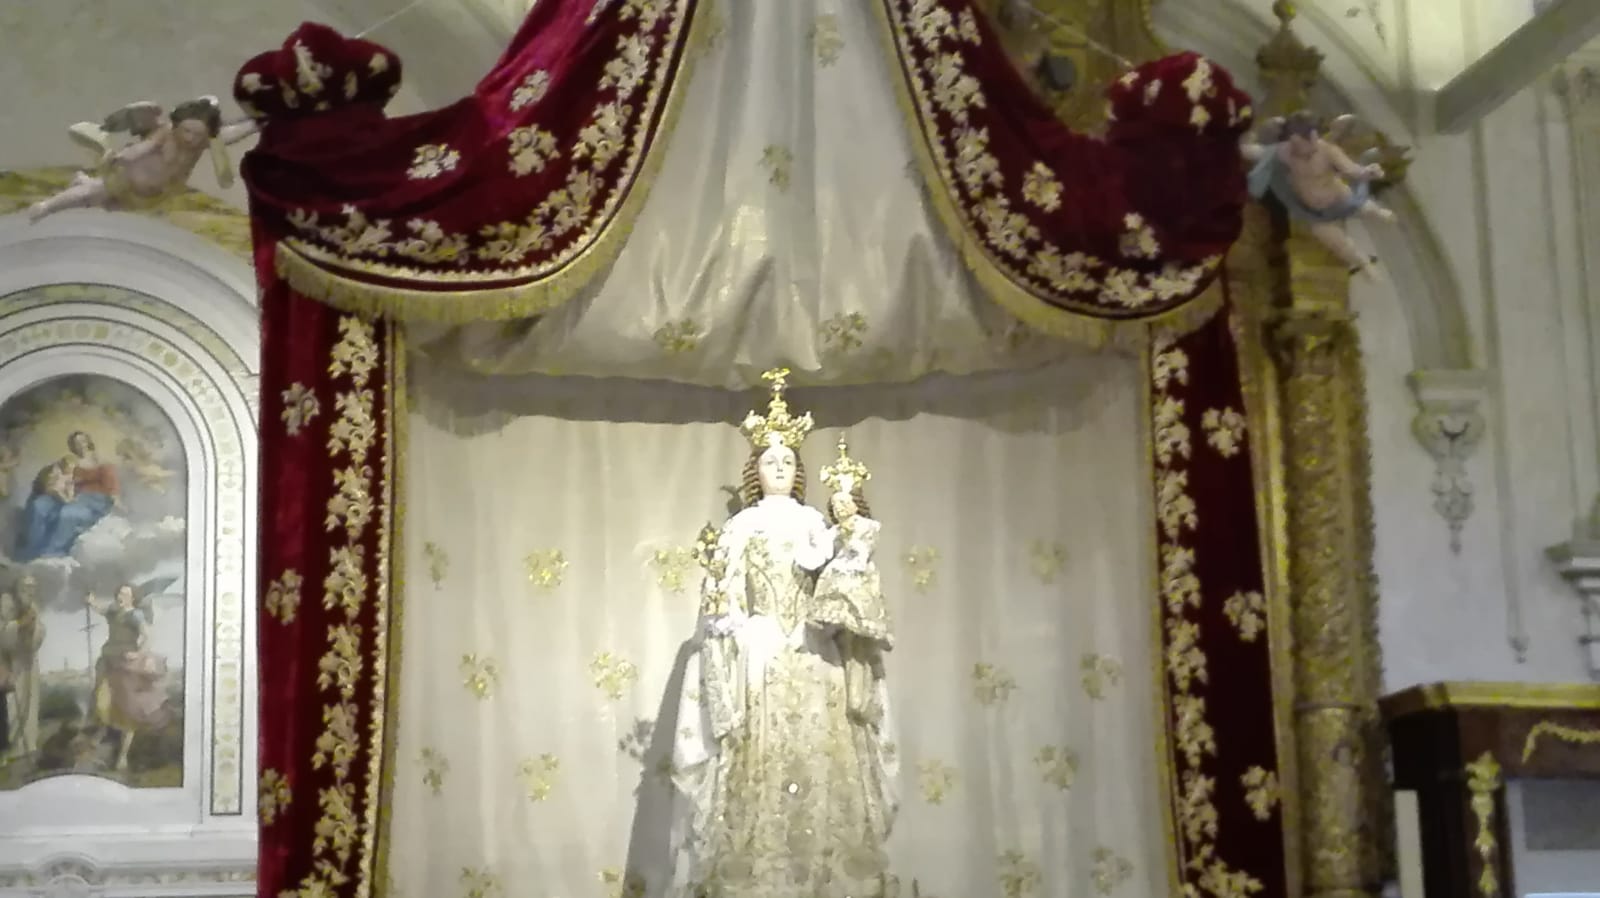 Peregrinatio Madonna della Bruna nei comuni dell’Arcidiocesi,  il 14 l’effigie di Maria verrà traslata nel comune di Ferrandina